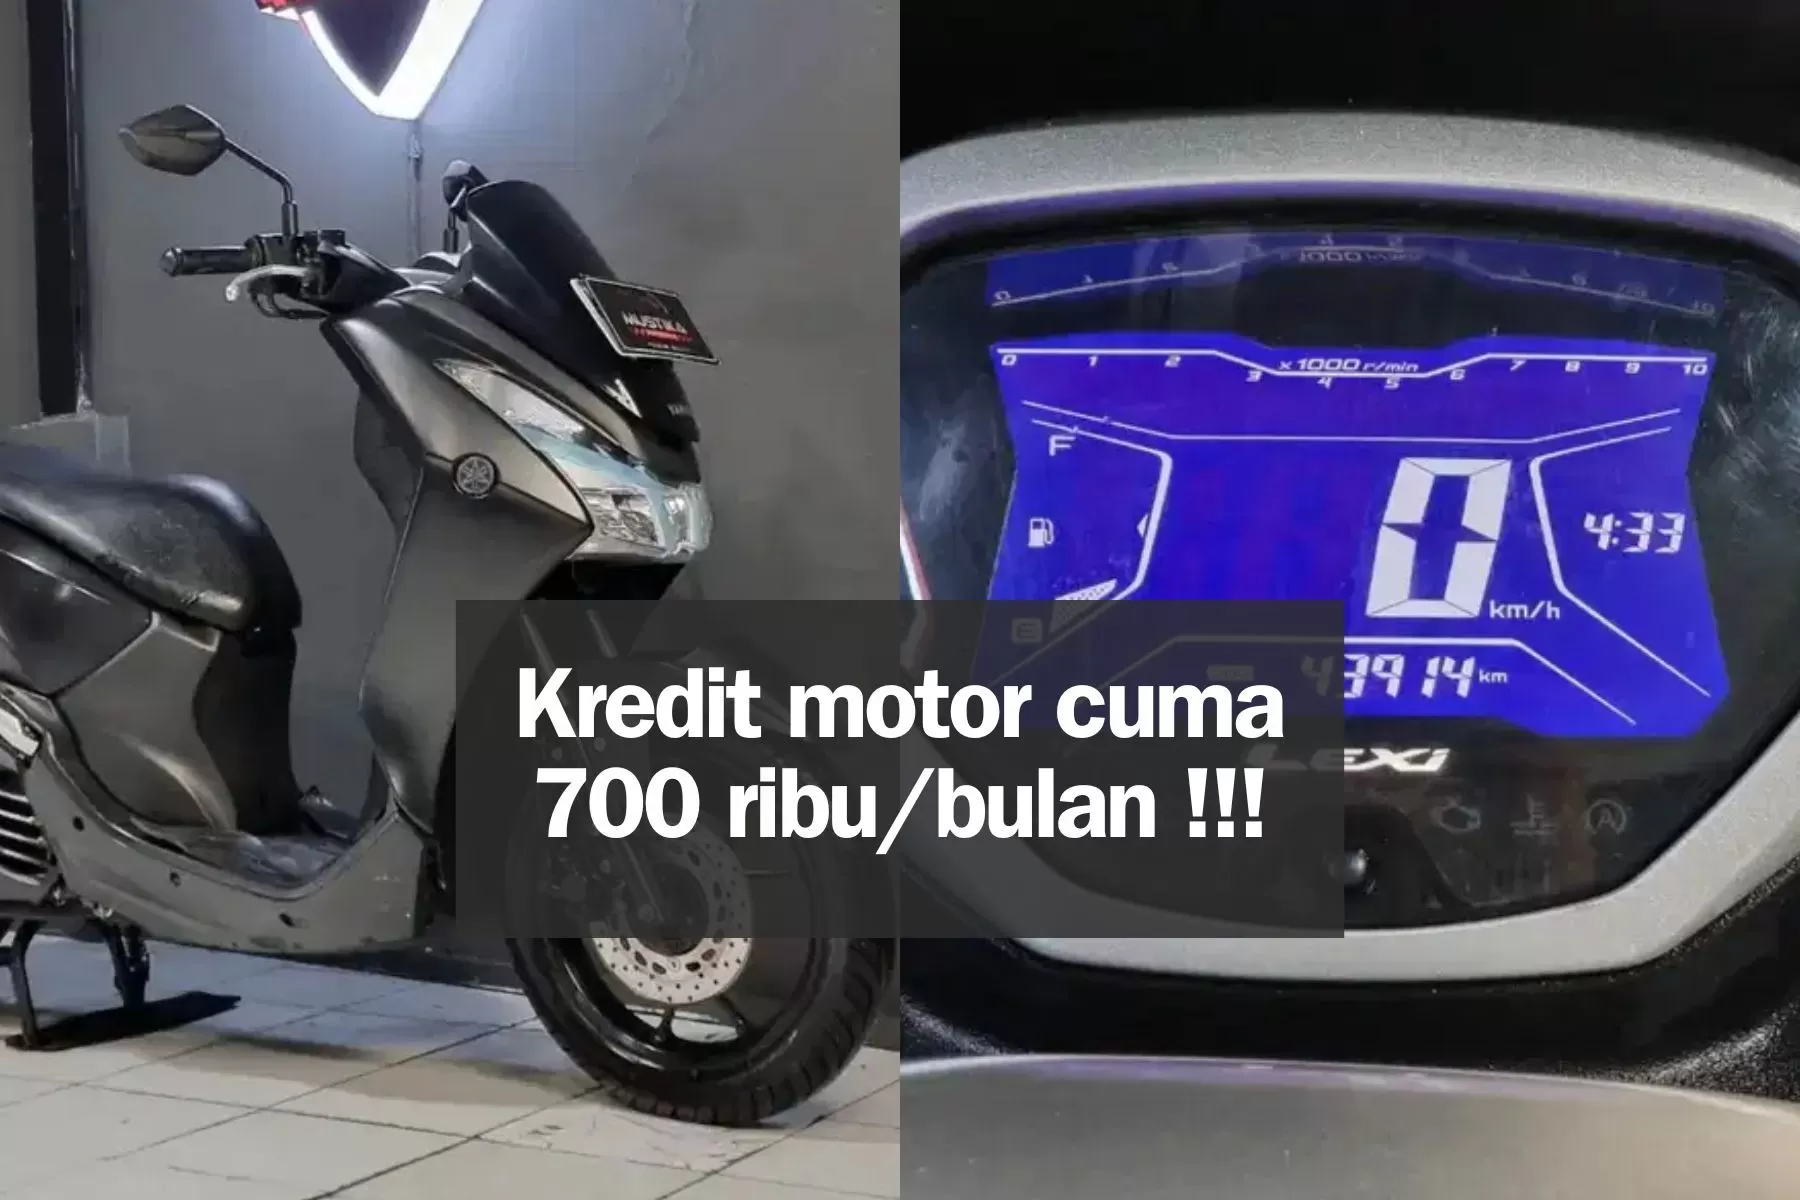 Angsuran 700 Ribuan Per Bulan! Skema Kredit Motor Yamaha Lexi Tahun 2019 Bekas di Malang: DP Hanya 1,2 Juta